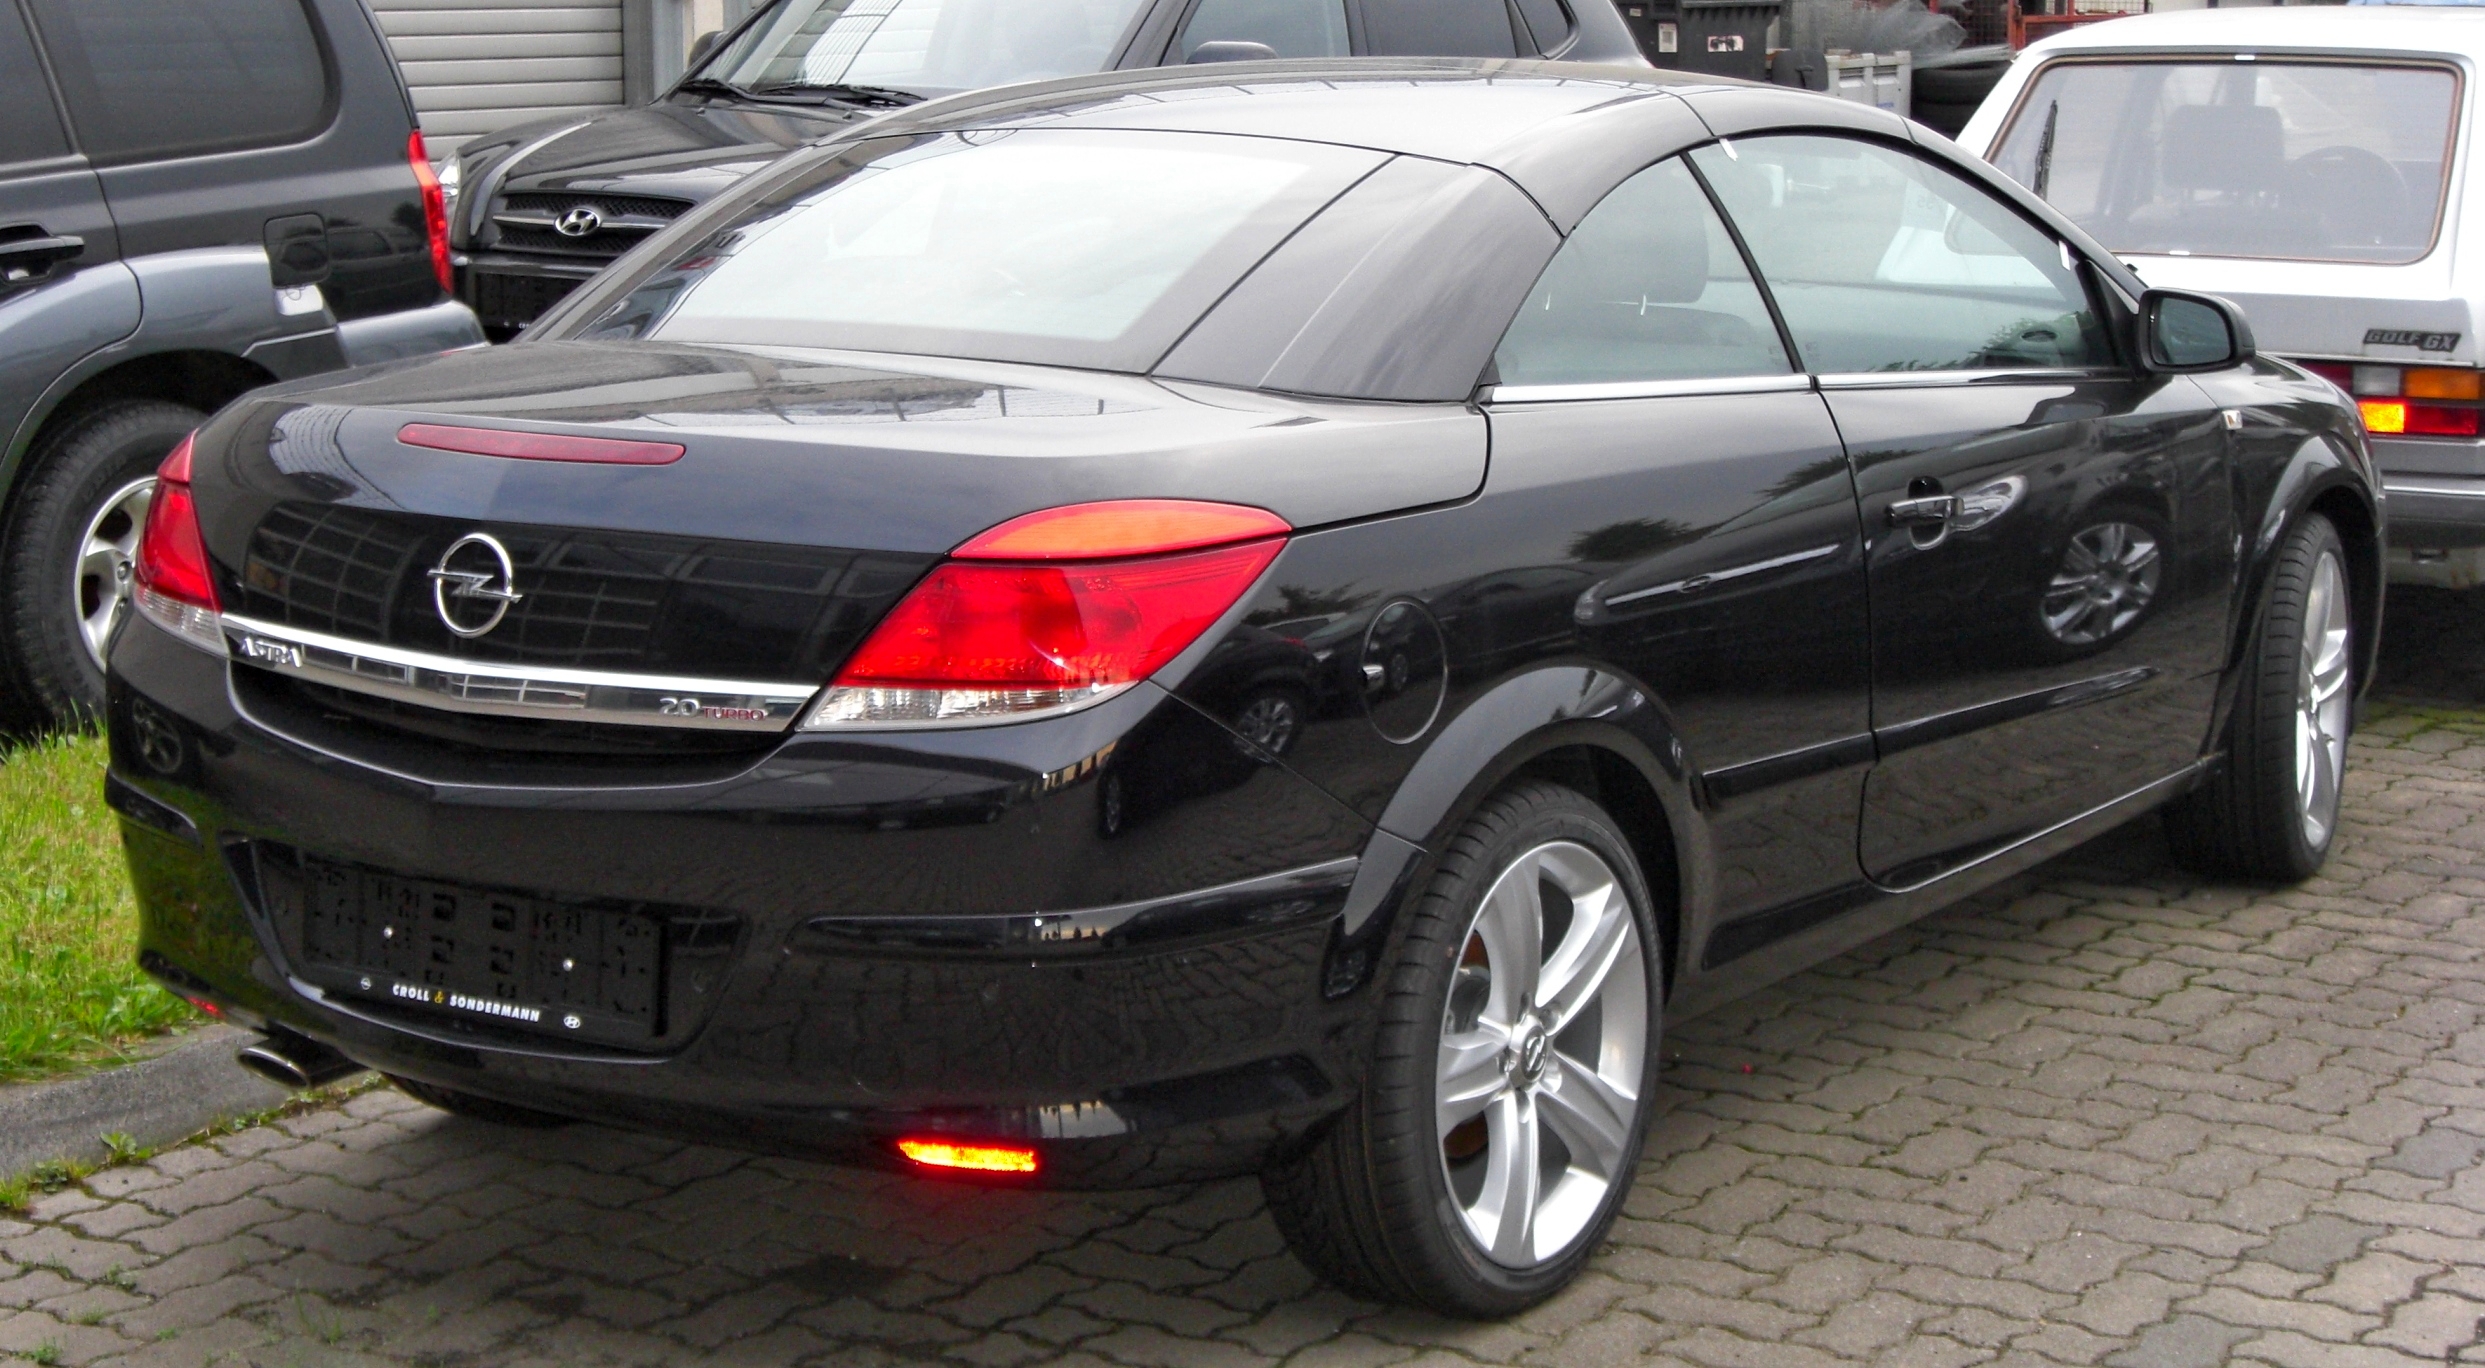 File:Opel Astra TwinTop 2.0 Turbo Facelift rear.JPG - Wikimedia ...